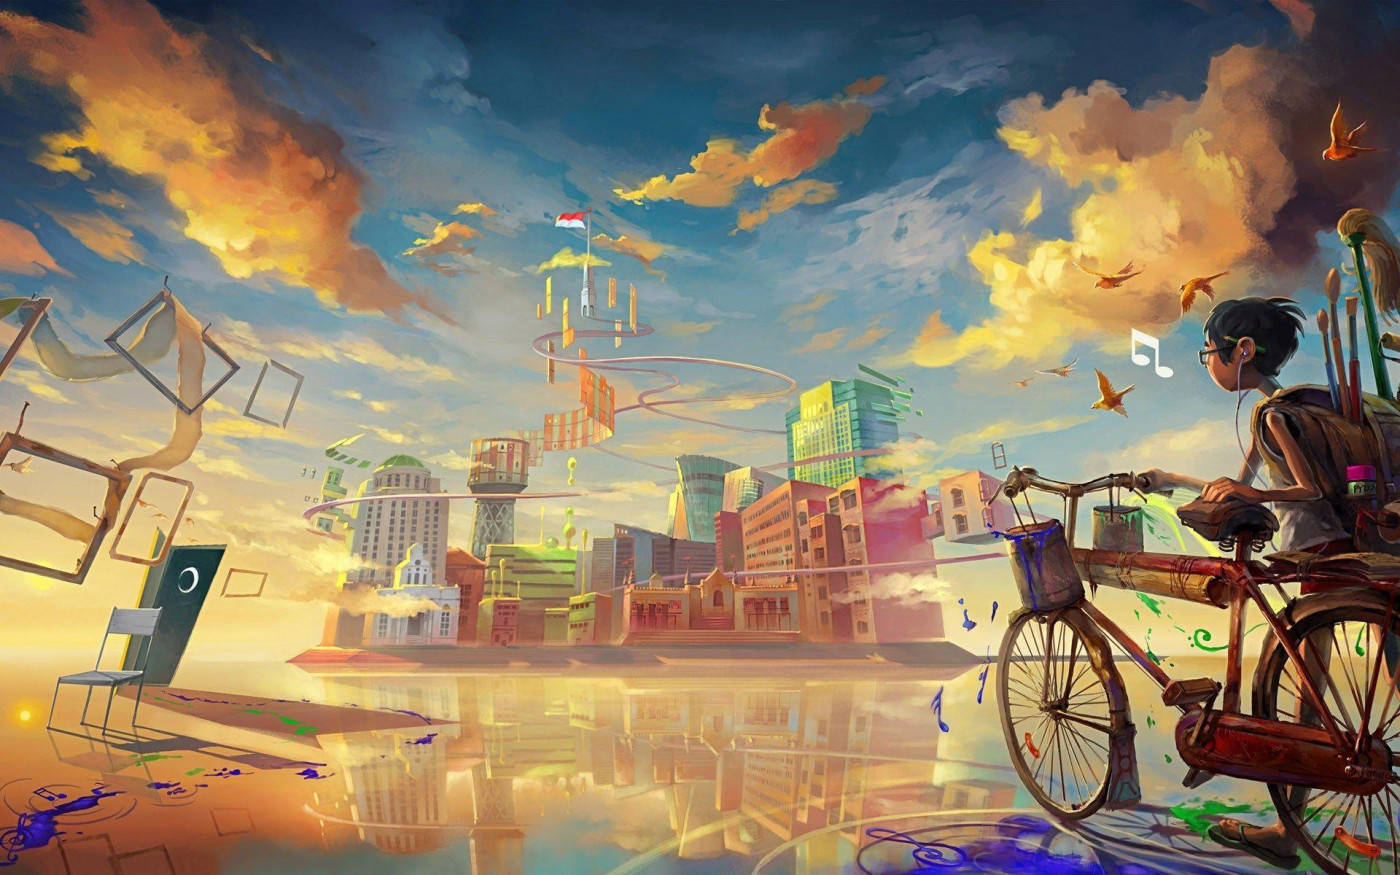 Fantastical Floating City Illustration Art Picture